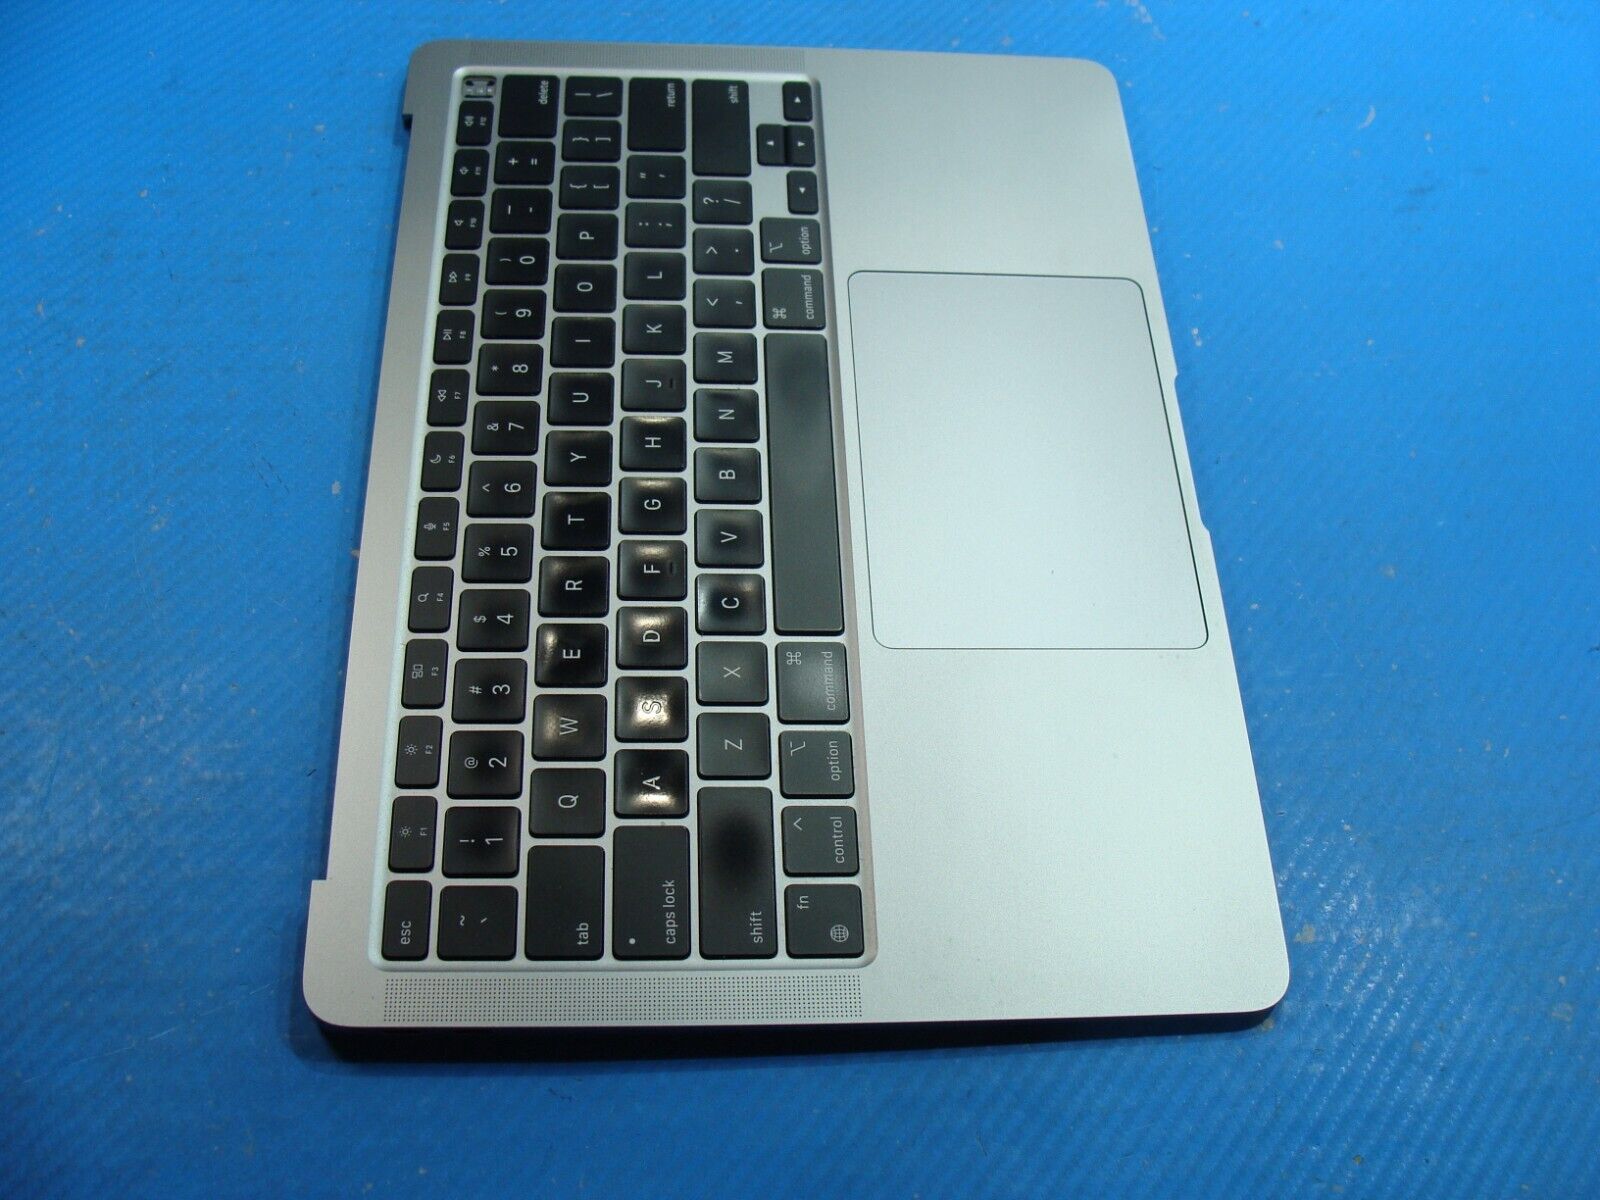 MacBook Air M1 13